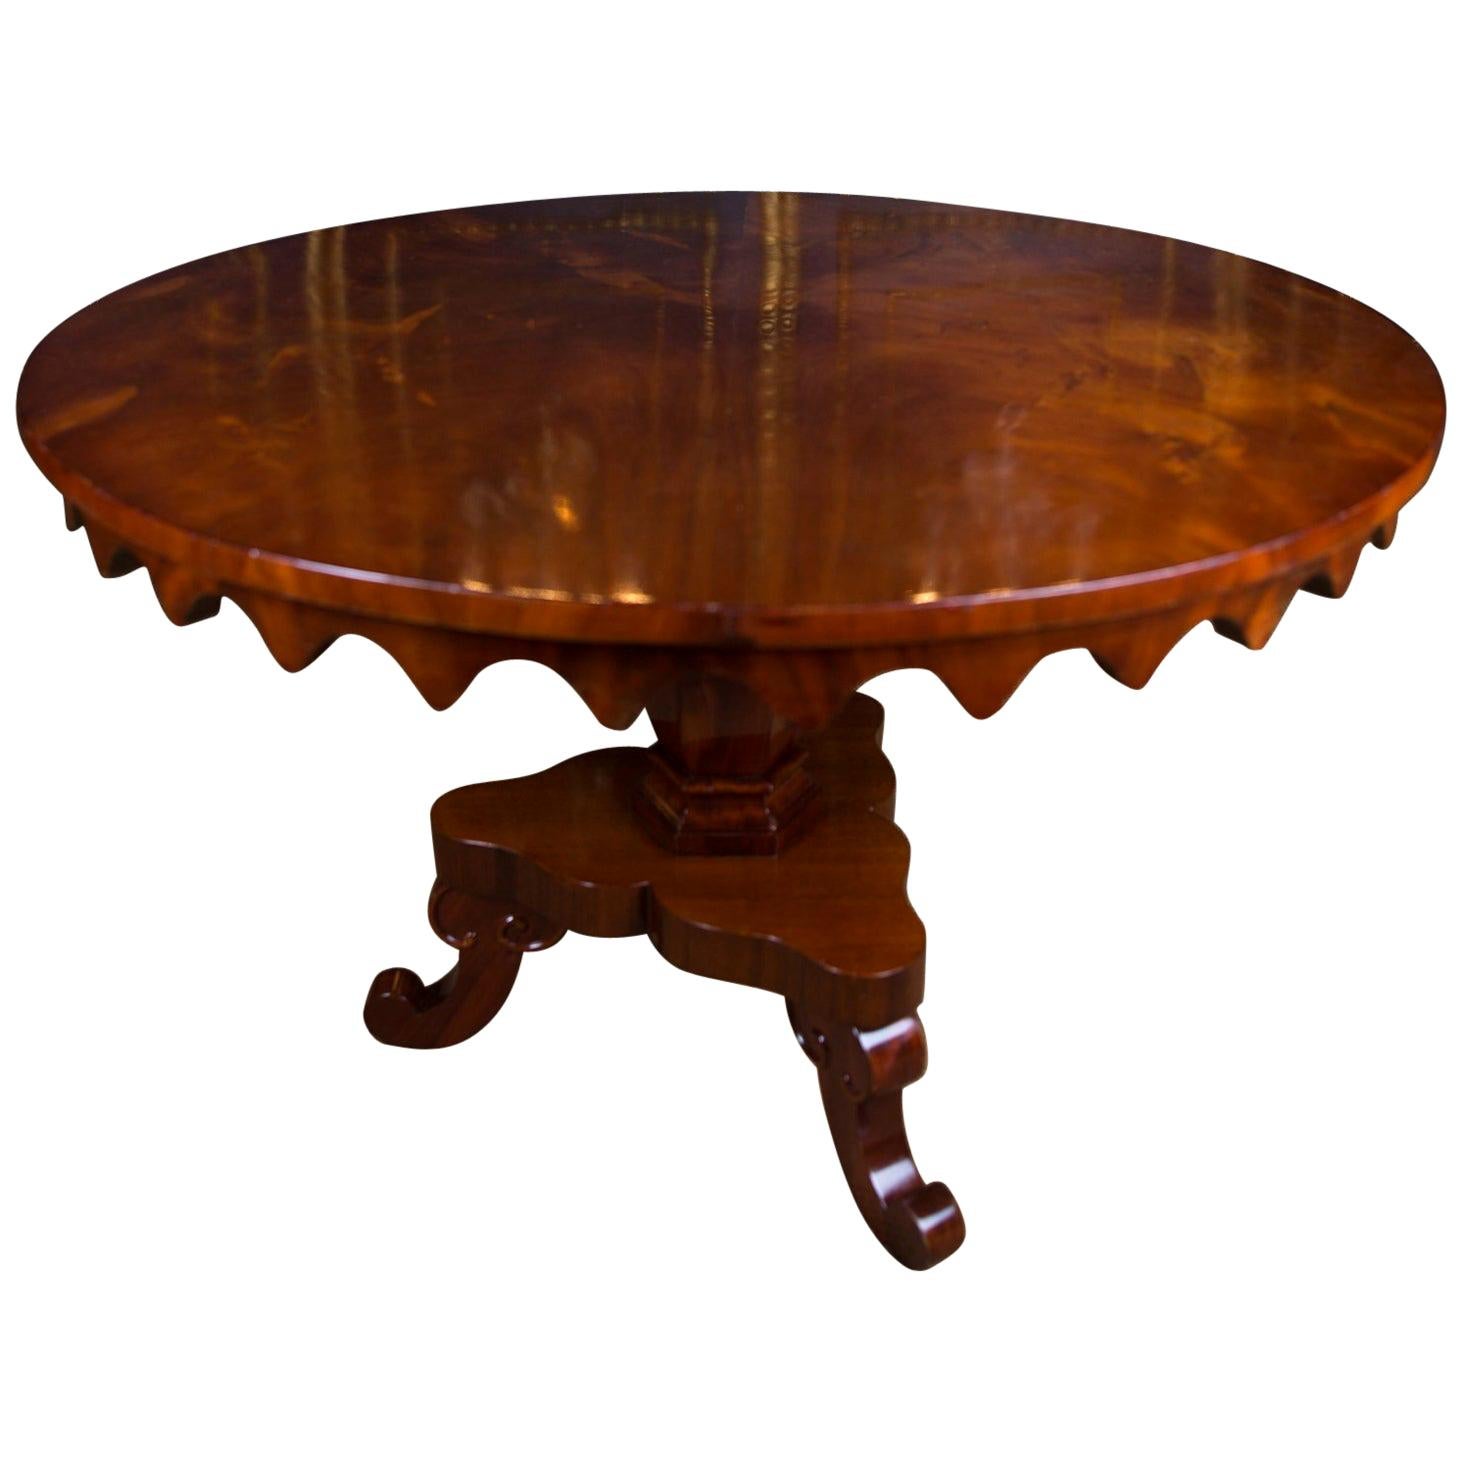 19th Century antique Original Biedermeier Table Mahogany veneer Warm Patina